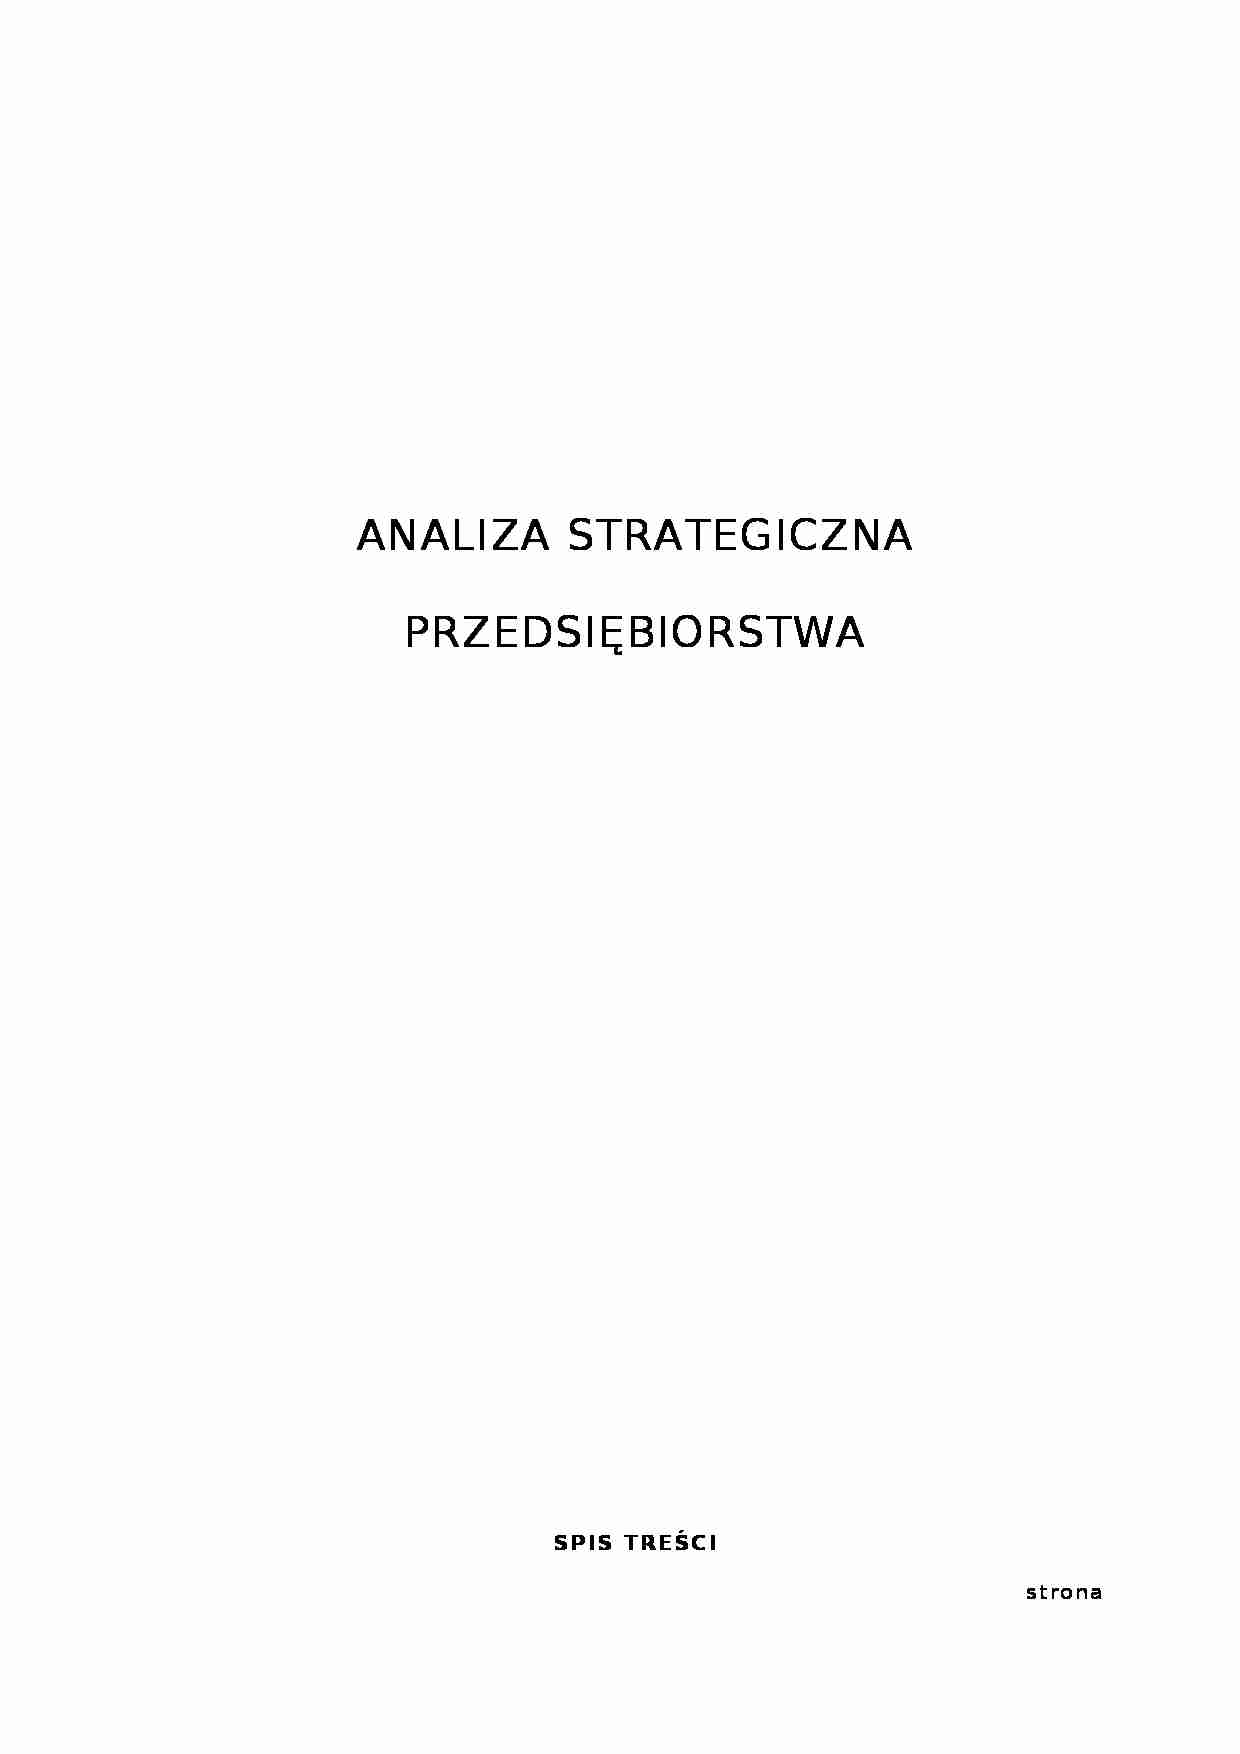 Analiza strategiczna PUDM - przedsiębiorstwo - strona 1